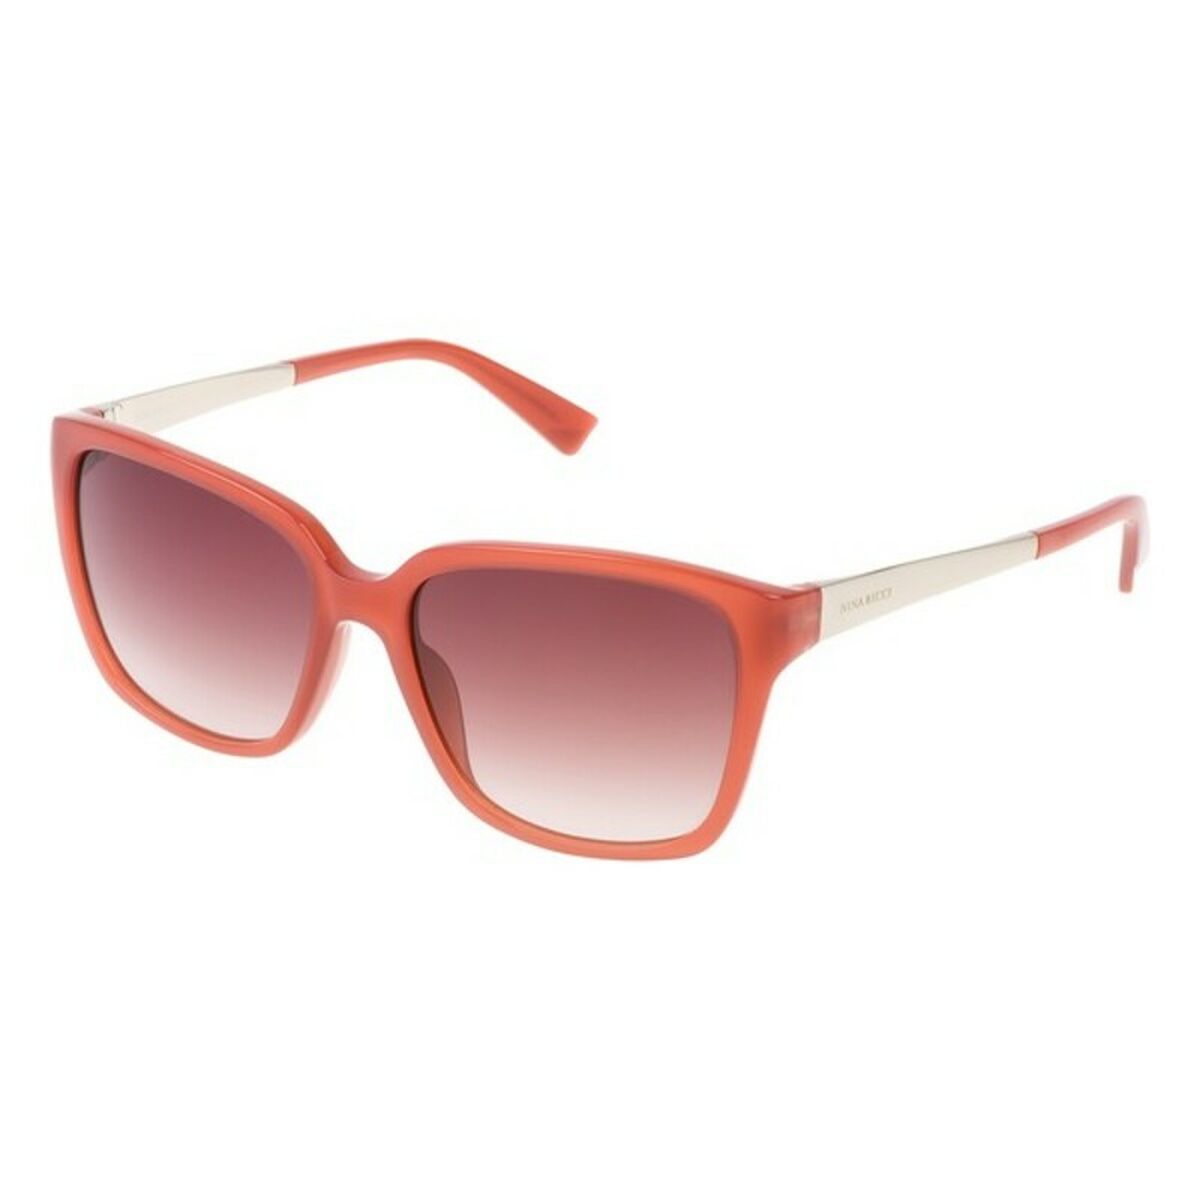 Ladies'Sunglasses Nina Ricci